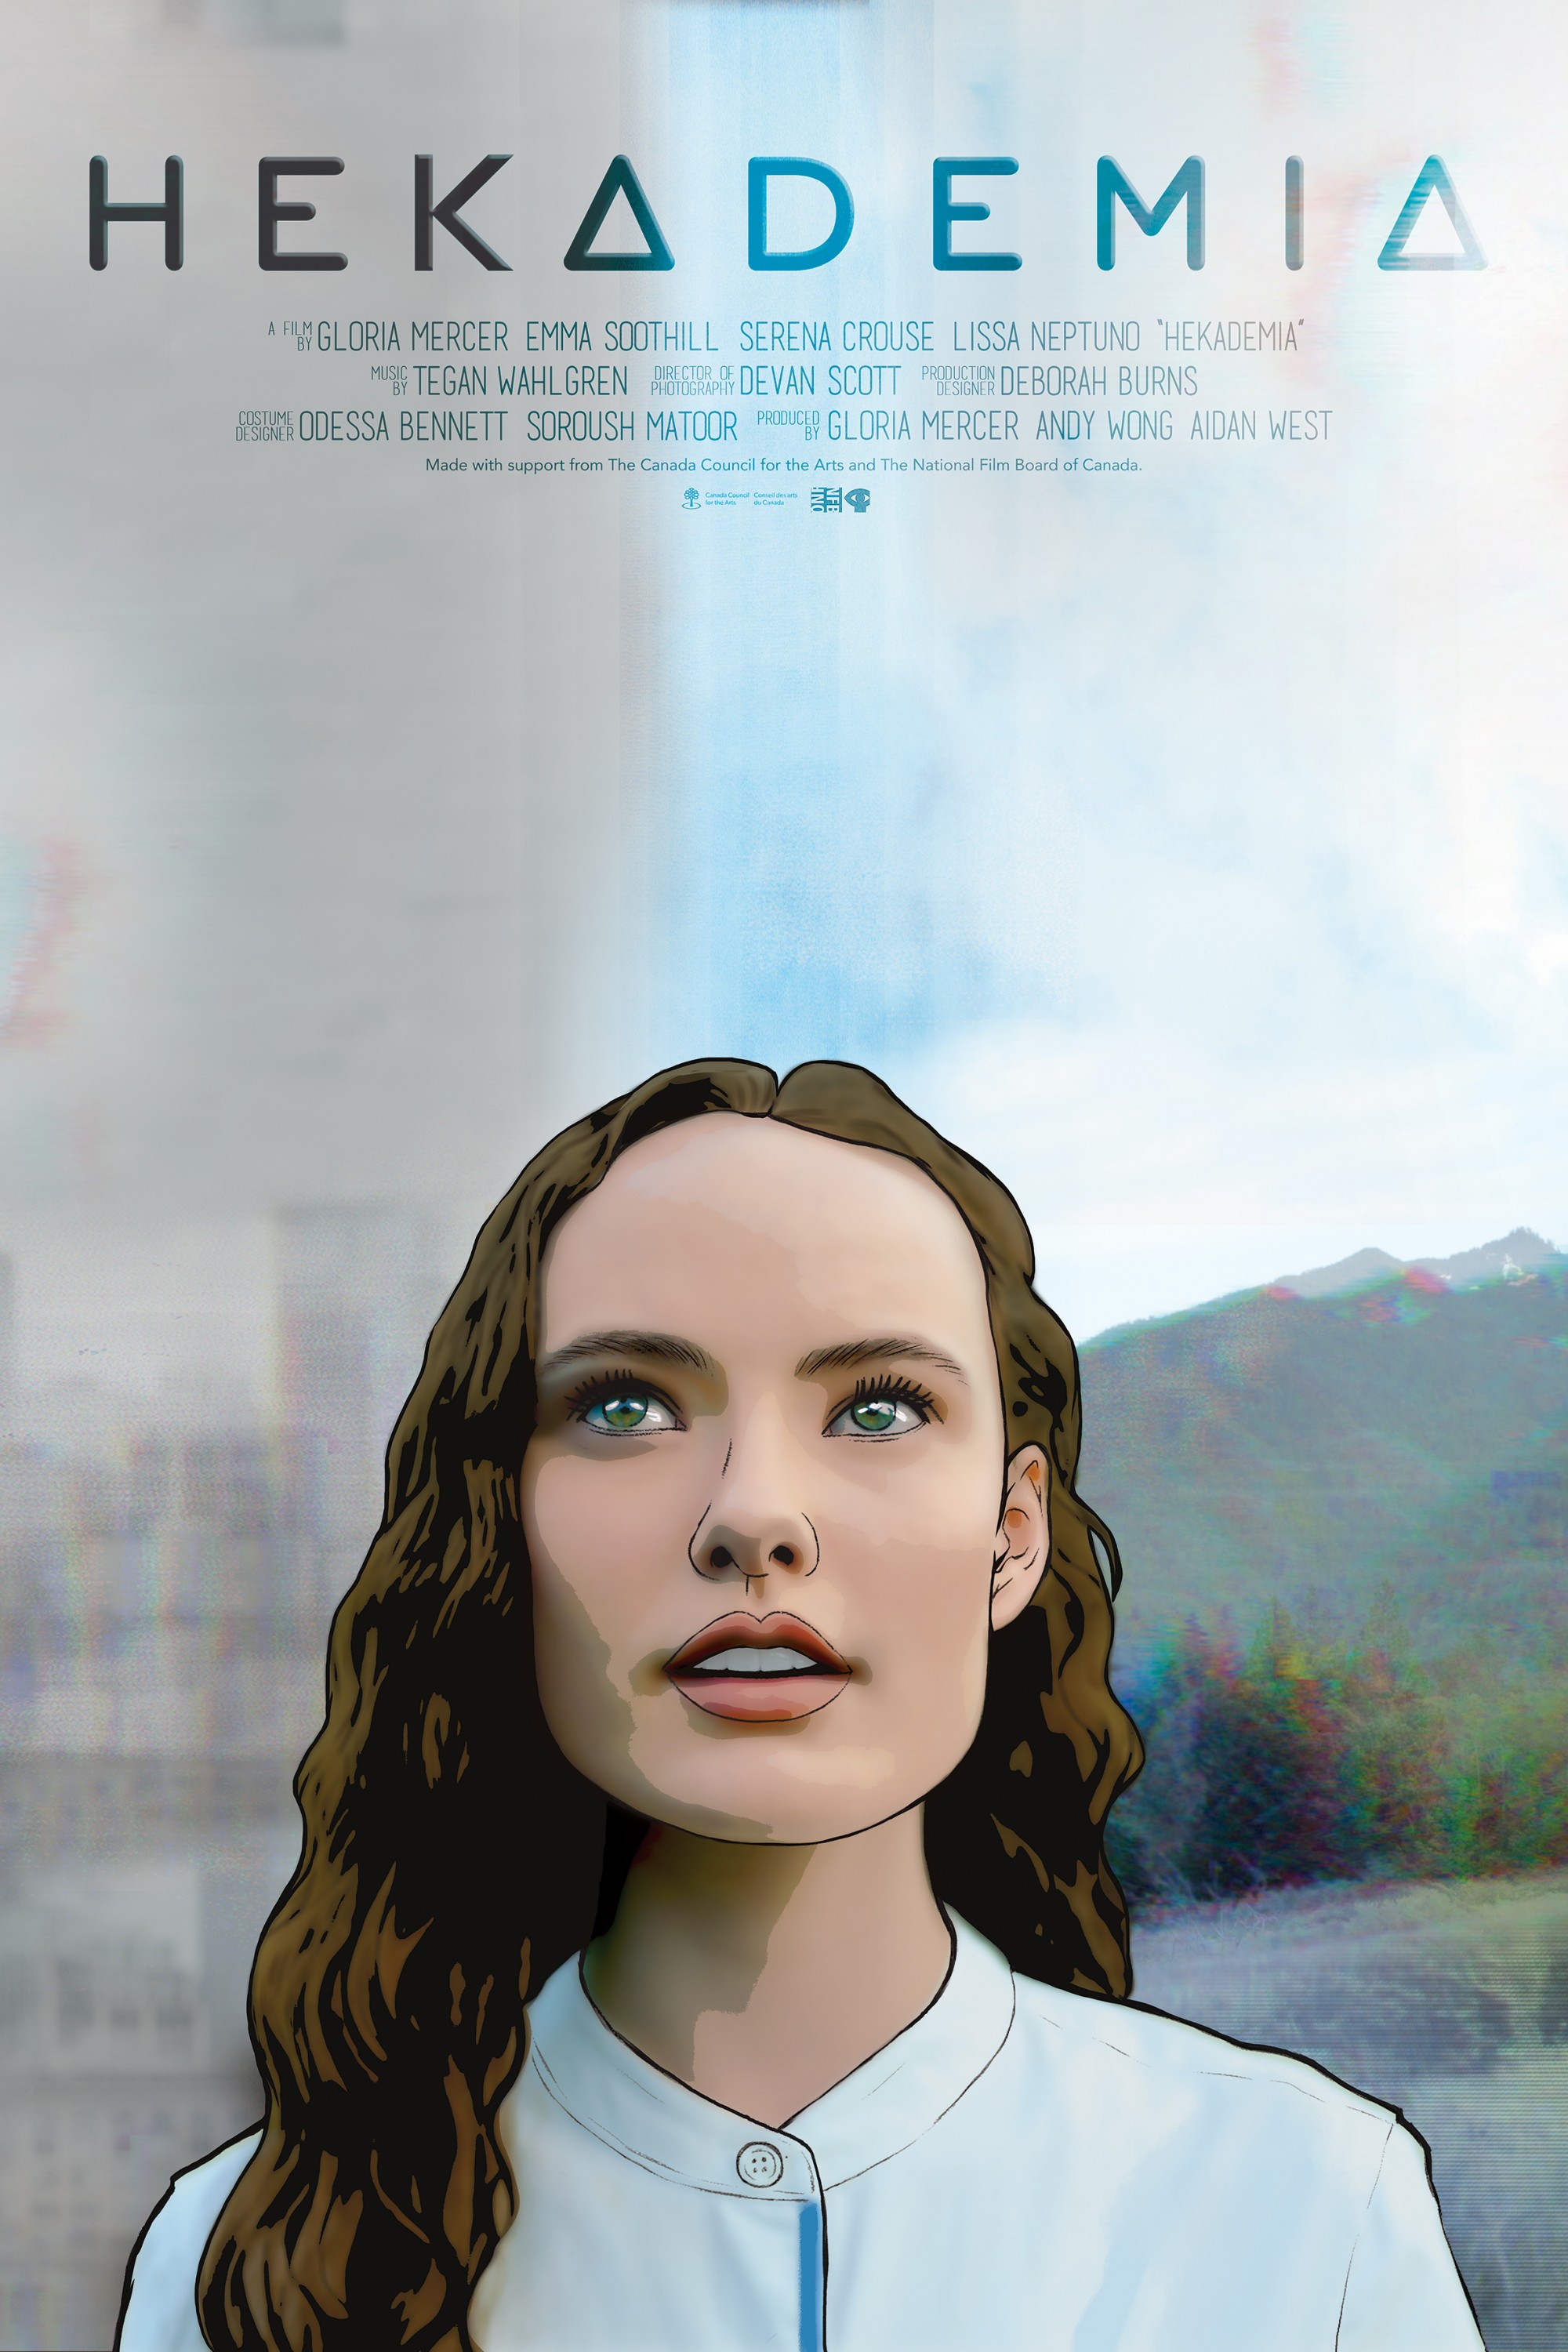 Mega Sized Movie Poster Image for Hekademia